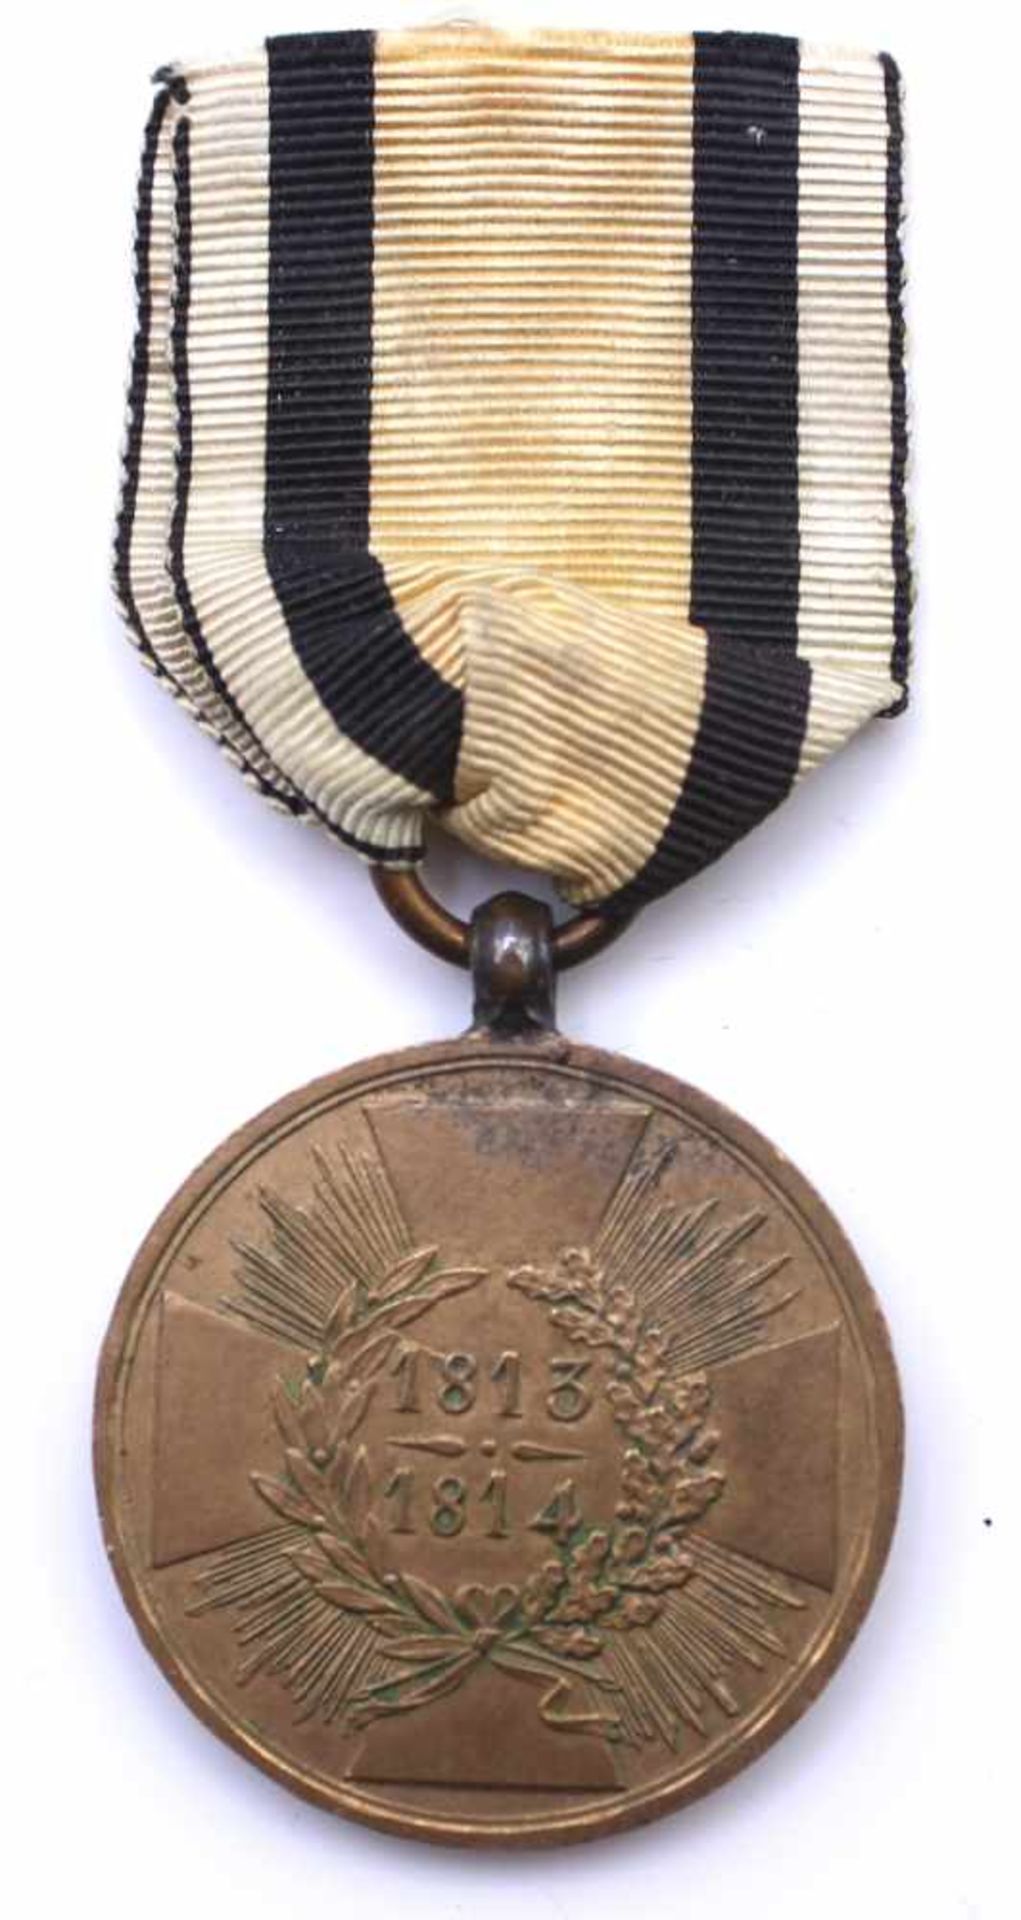 Kriegsdenkmünze "1813-1814" für Kombattanten, Bronze, Randprägung "Aus erobertem Geschütz", Kreuz